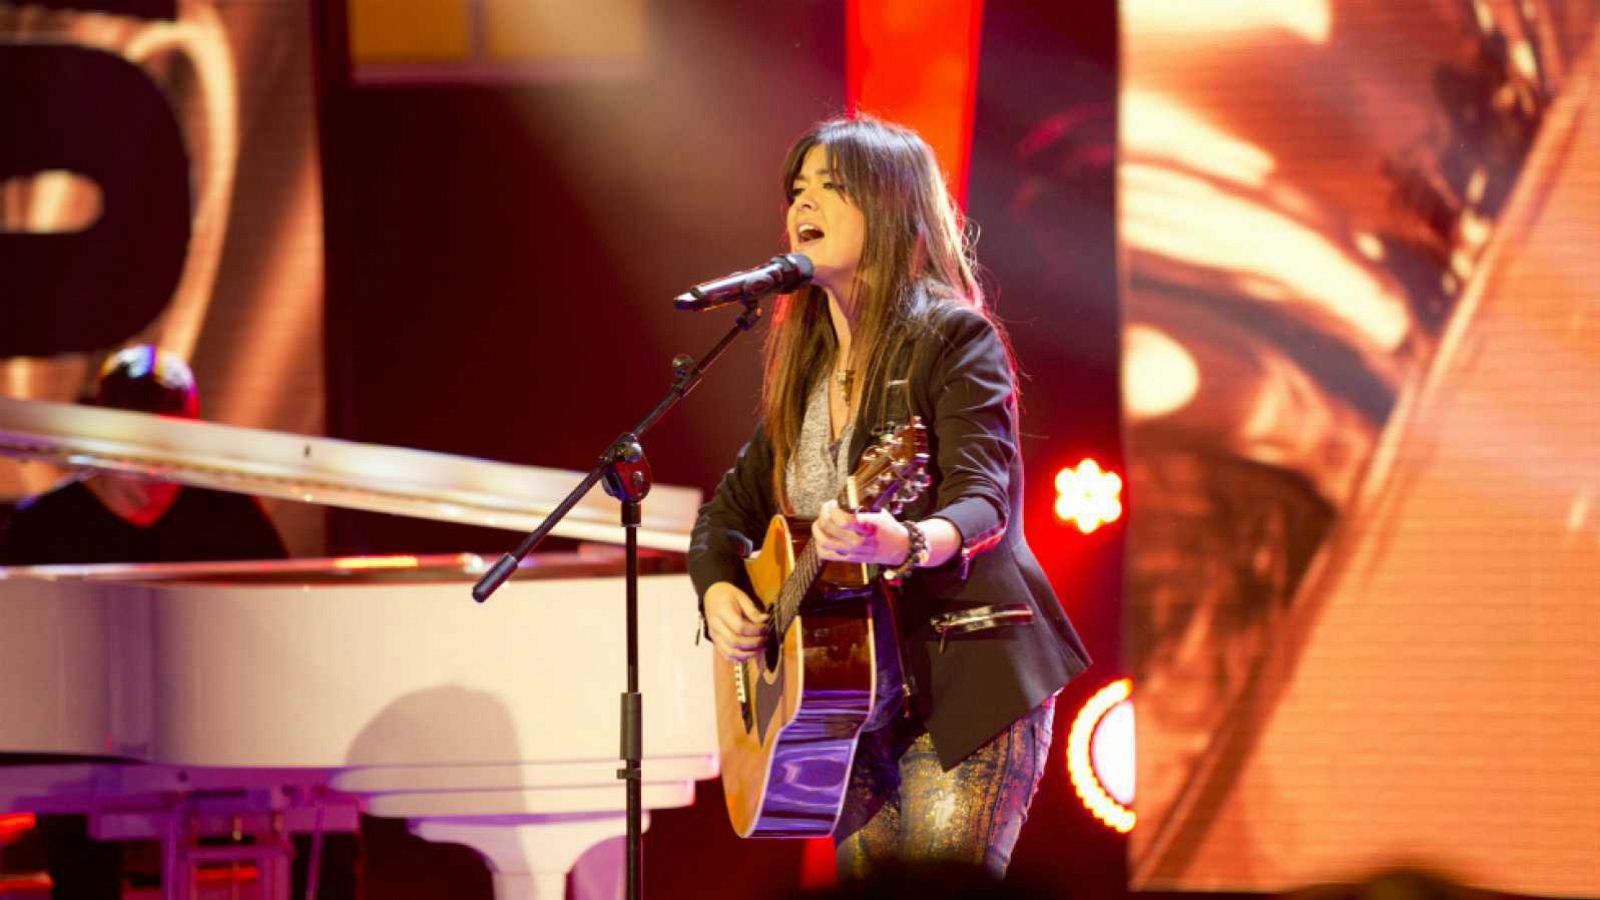 Vanesa Martín es una cantautora española que protagoniza el especial 'Vuela conmigo' de RTVE